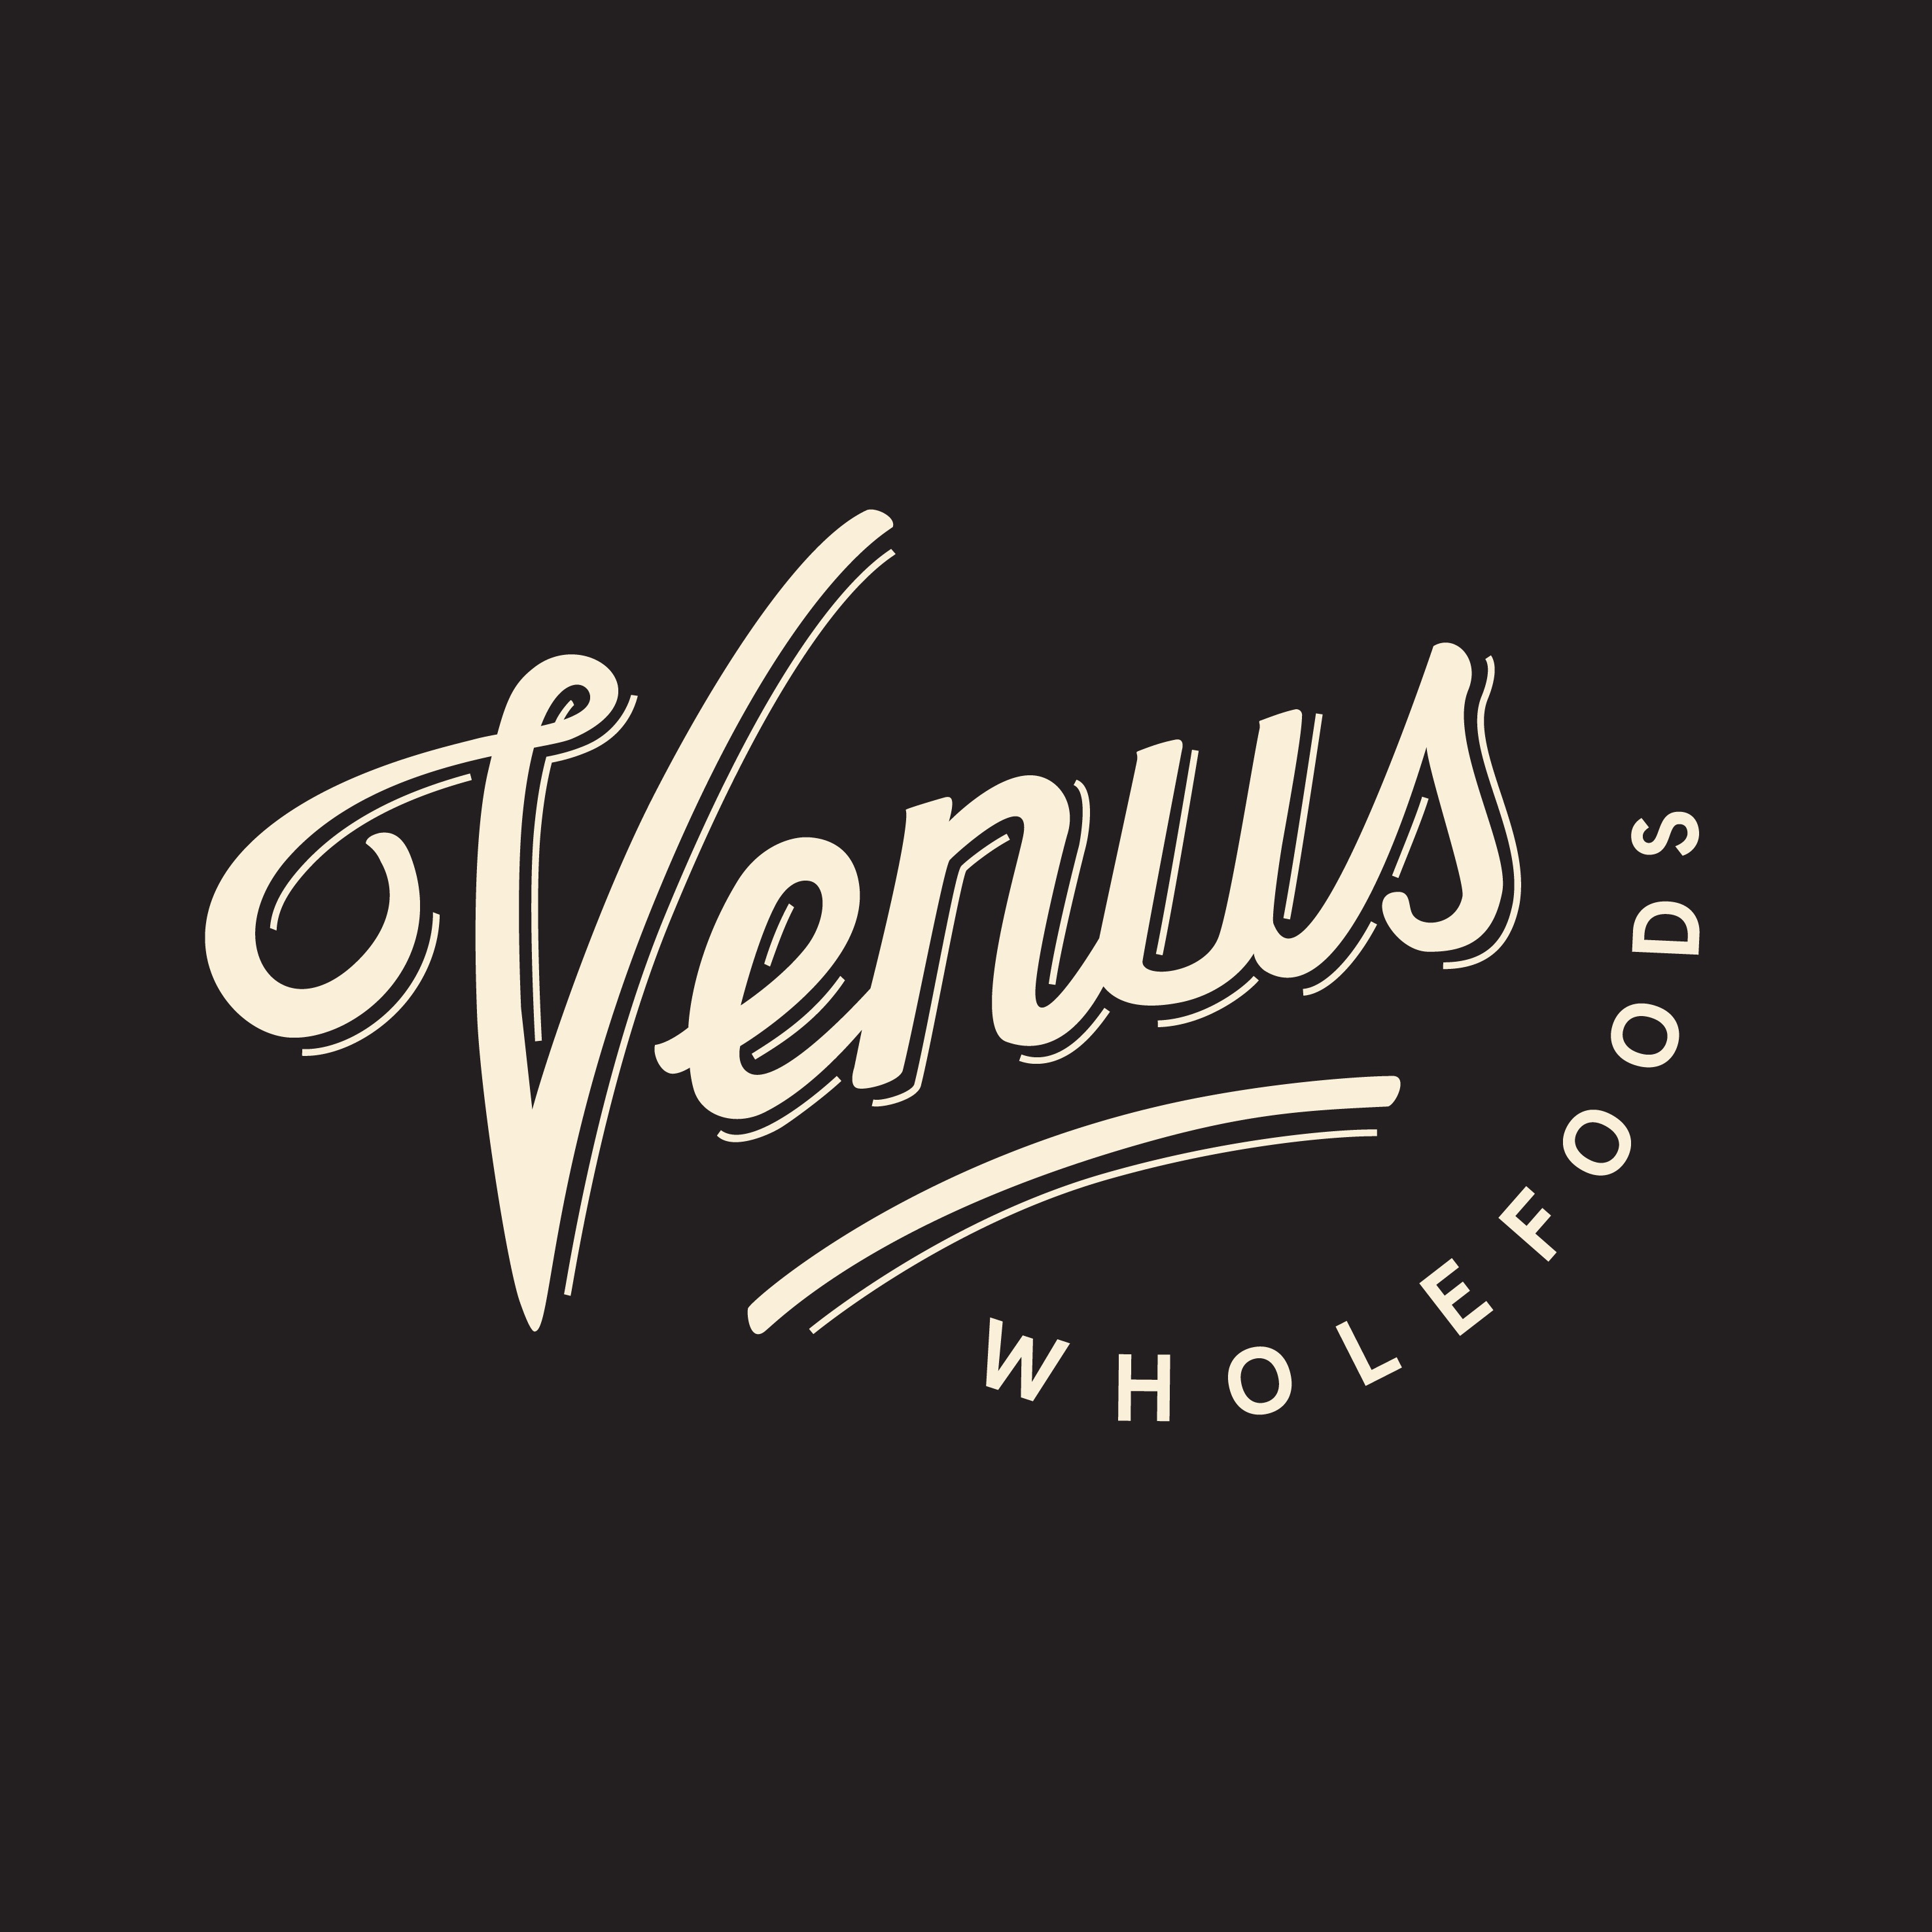 Venus Whole Foods